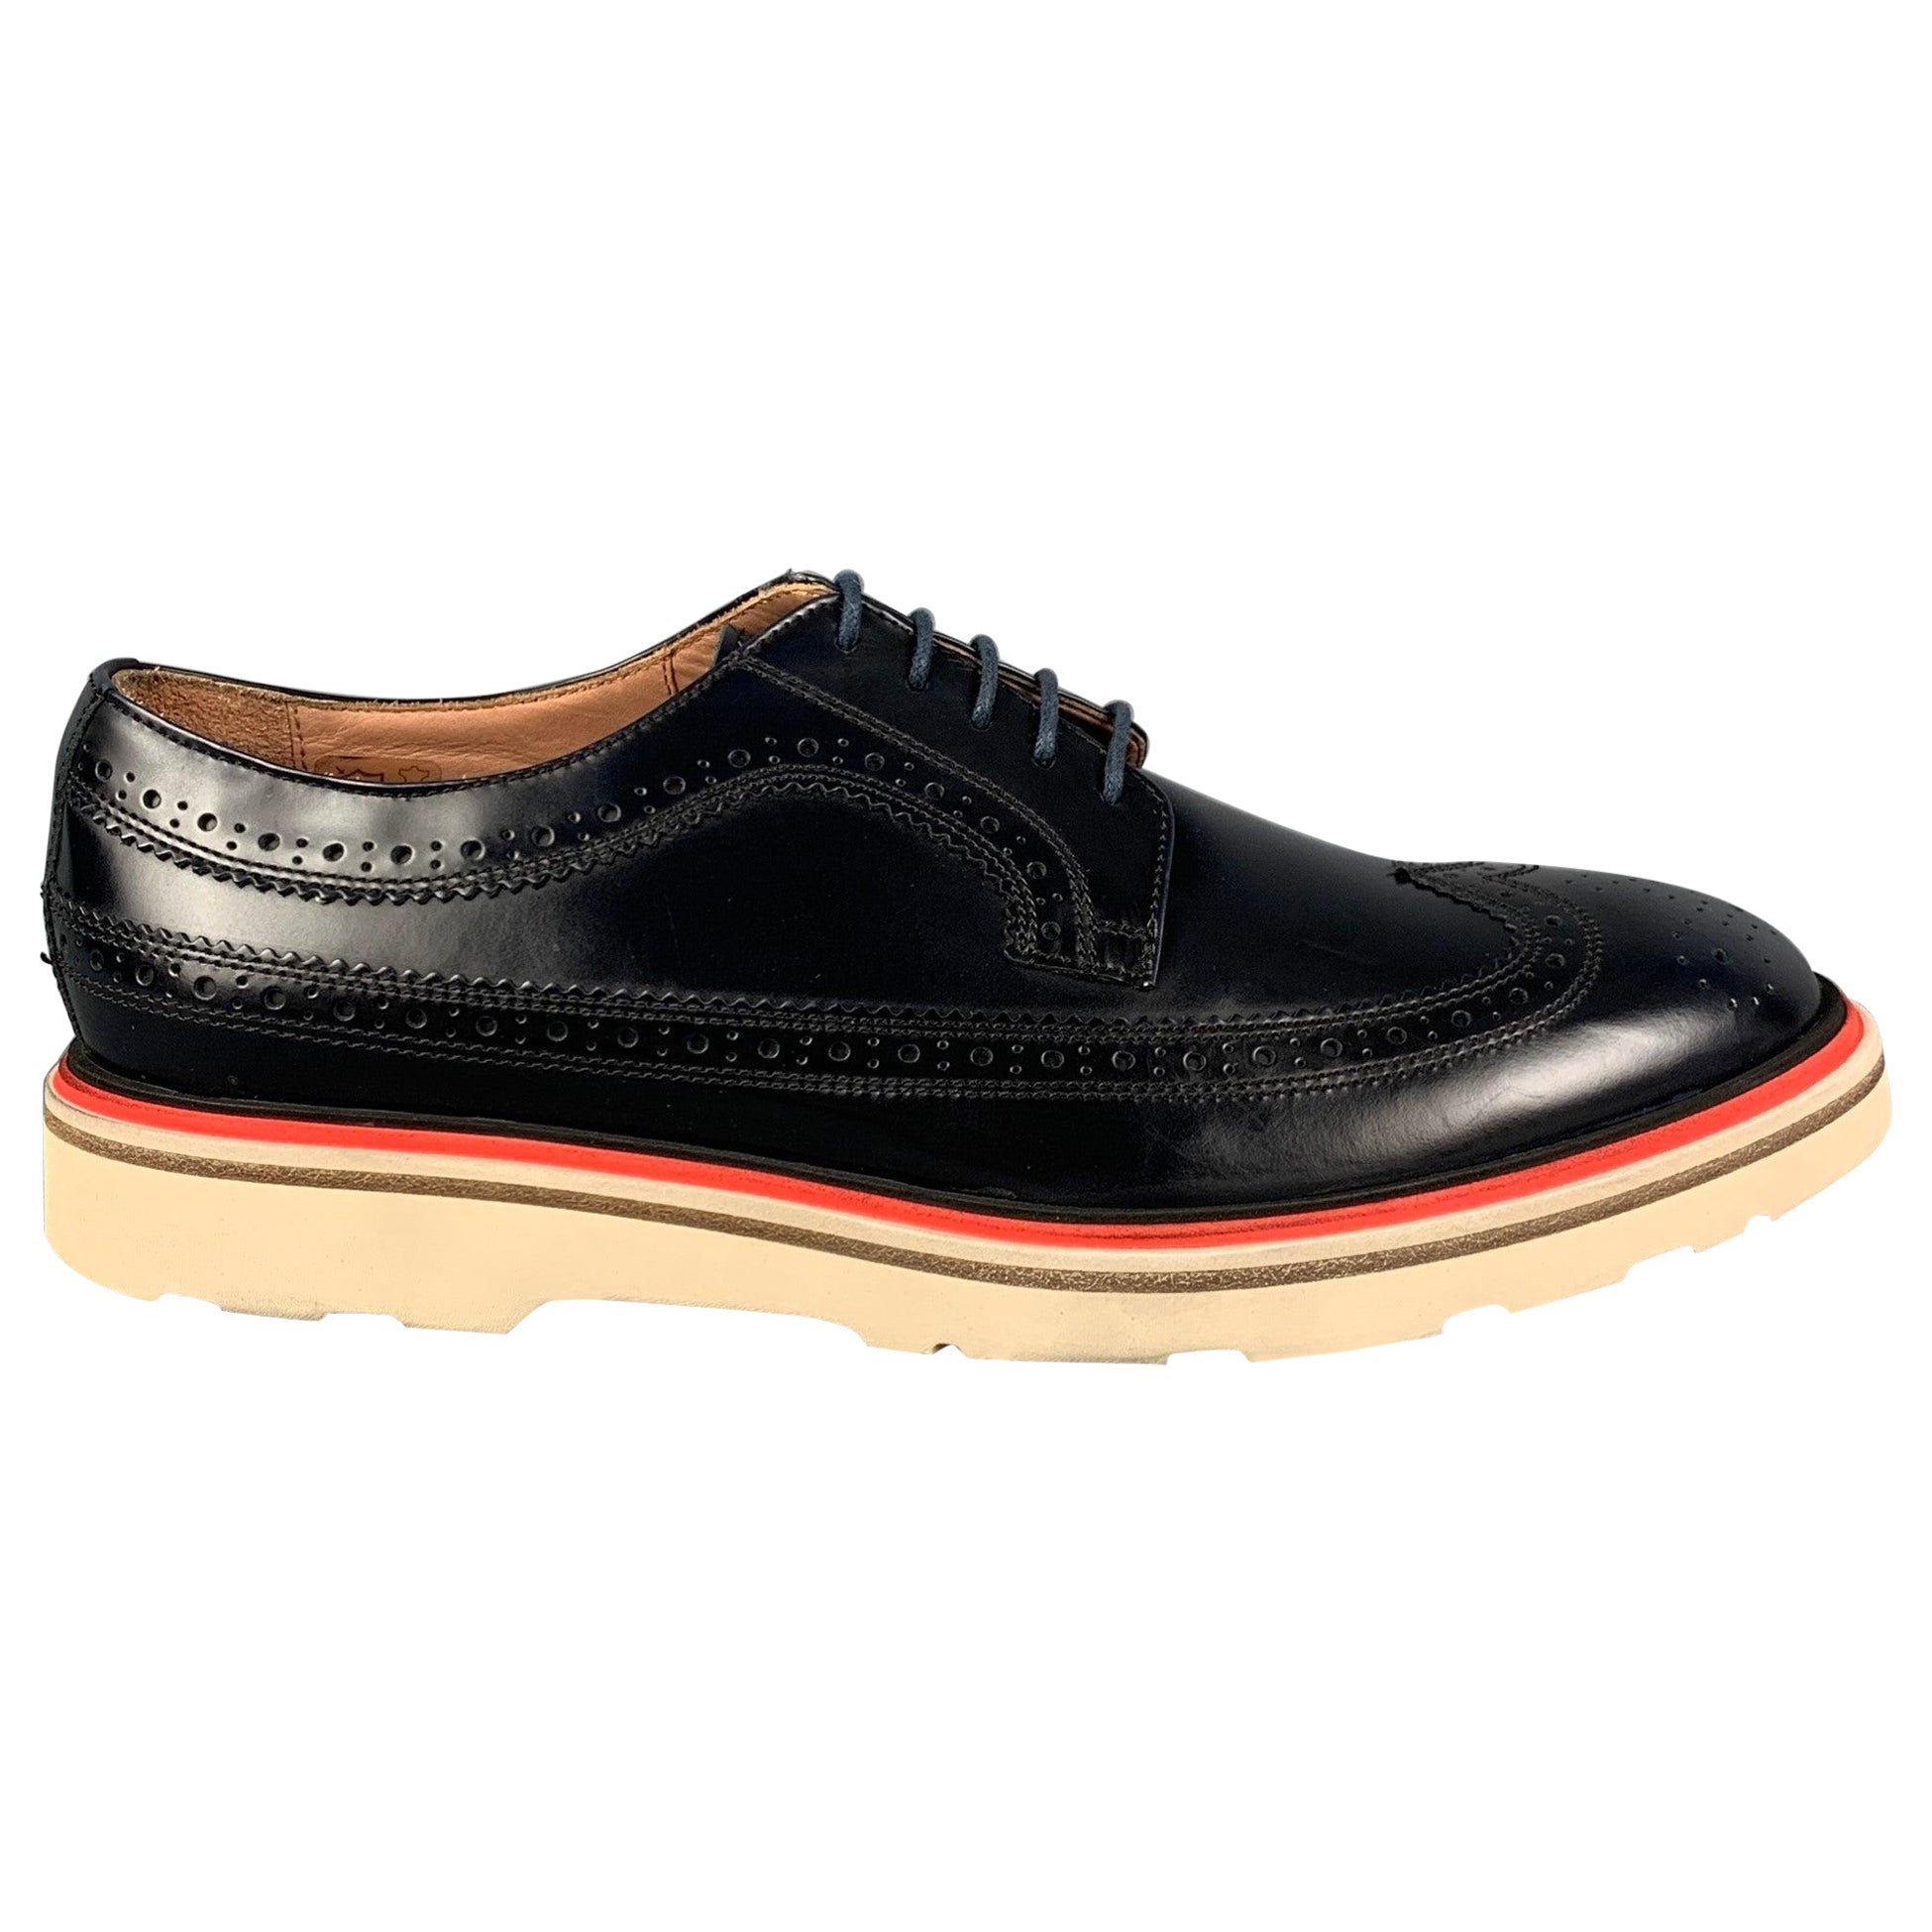 PAUL SMITH - Chaussures à lacets en cuir perforé blanc marine, taille 7,5 en vente